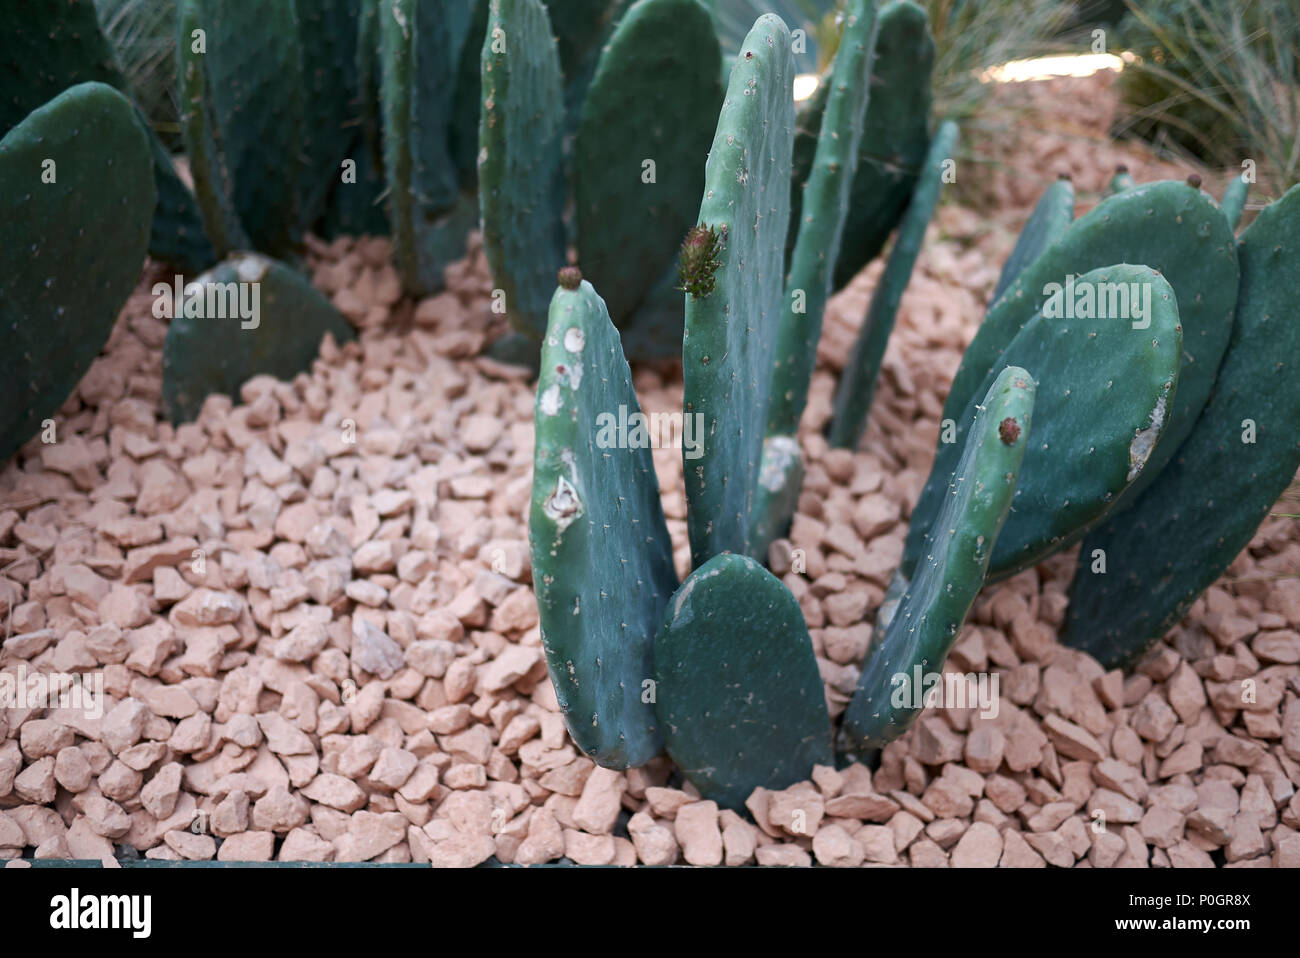 Opuntia in a garden Stock Photo